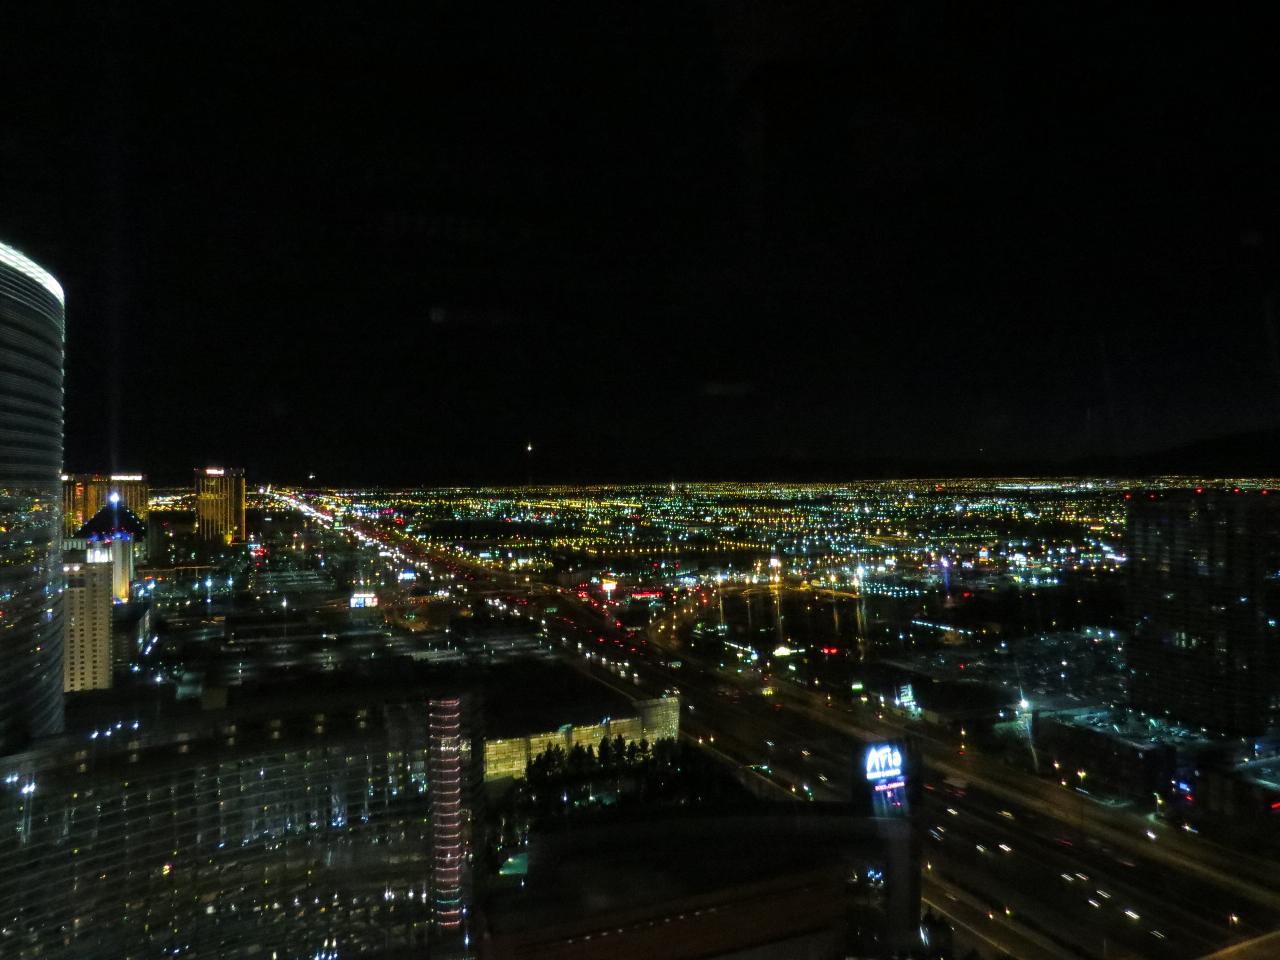 Southwest City View - Vdara - Las Vegas Strip, NV